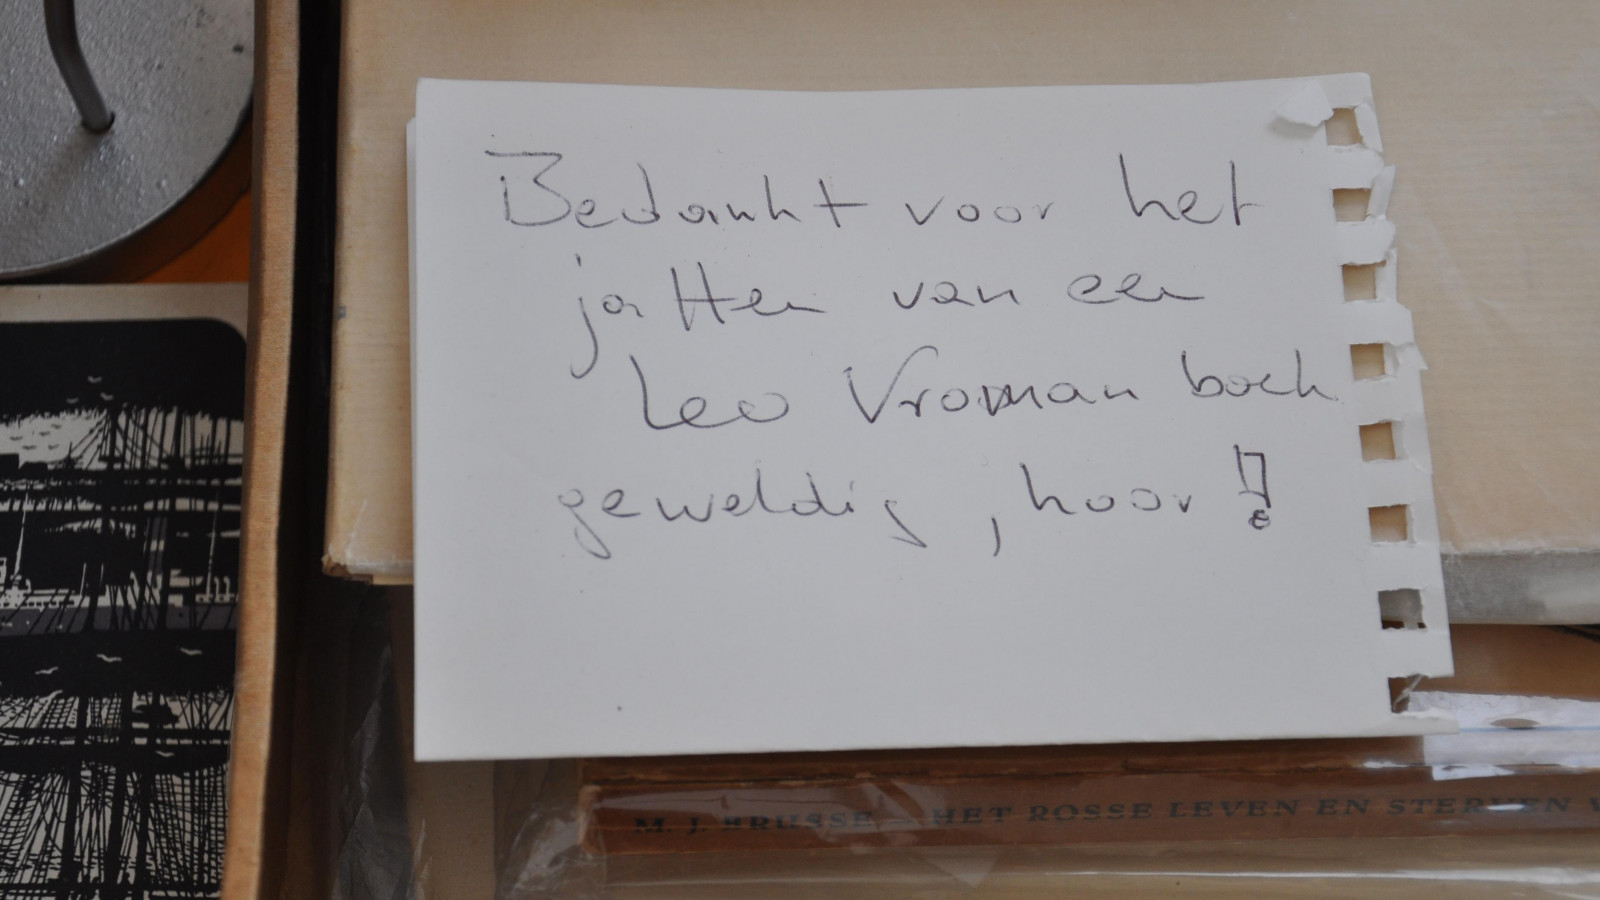 Tijdens de afscheidsbijeenkomst in Amsterdam werden in de Nieuwe Liefde door Huub Oosterhuis en anderen gedichten voorgelezen en dia's en stukjes  getoond uit documentaire's. Ook op de boekenmarkt op het Spui was Vromans in trek; getuige de foto met tekst